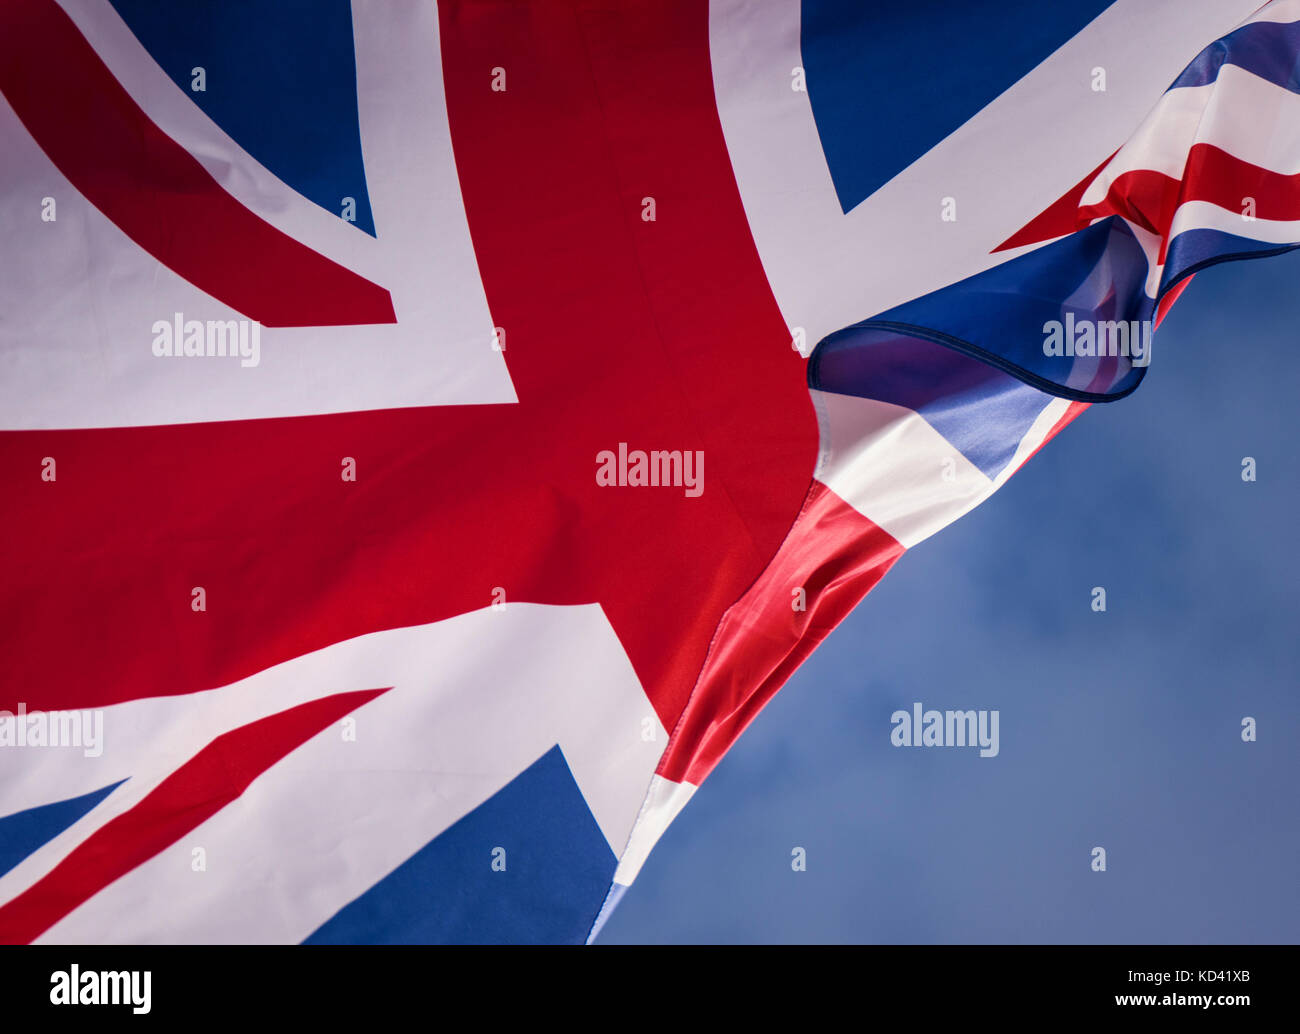 Union Jack Flagge gegen den blauen Himmel fliegen mit Brise weht durch als Metapher Konzept für Grenzen brexit Zuwanderungs-verhandlungen etc... Stockfoto